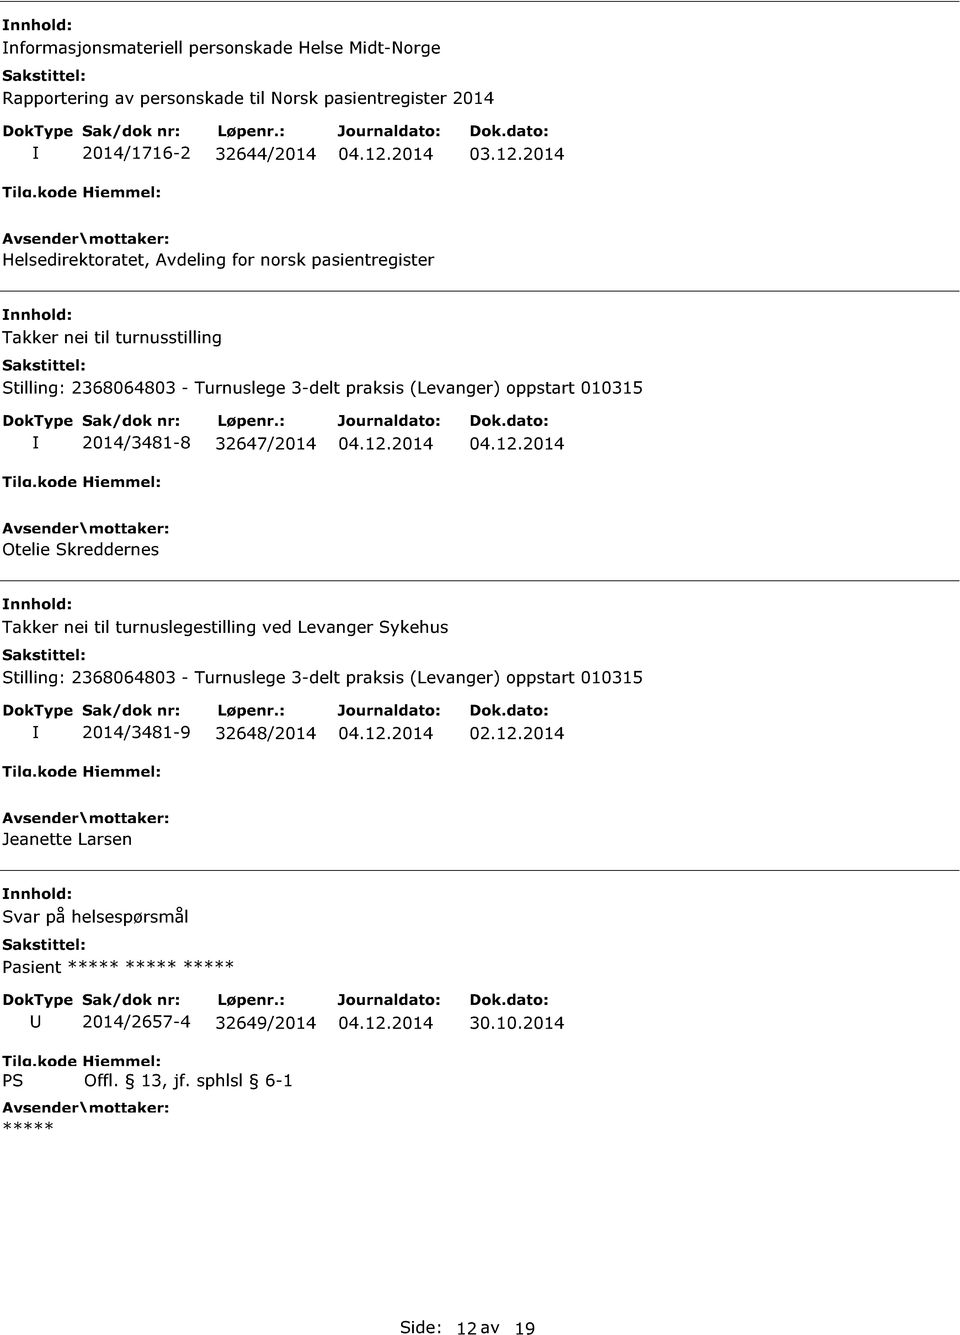 2014/3481-8 32647/2014 Otelie Skreddernes Takker nei til turnuslegestilling ved Levanger Sykehus Stilling: 2368064803 - Turnuslege 3-delt praksis